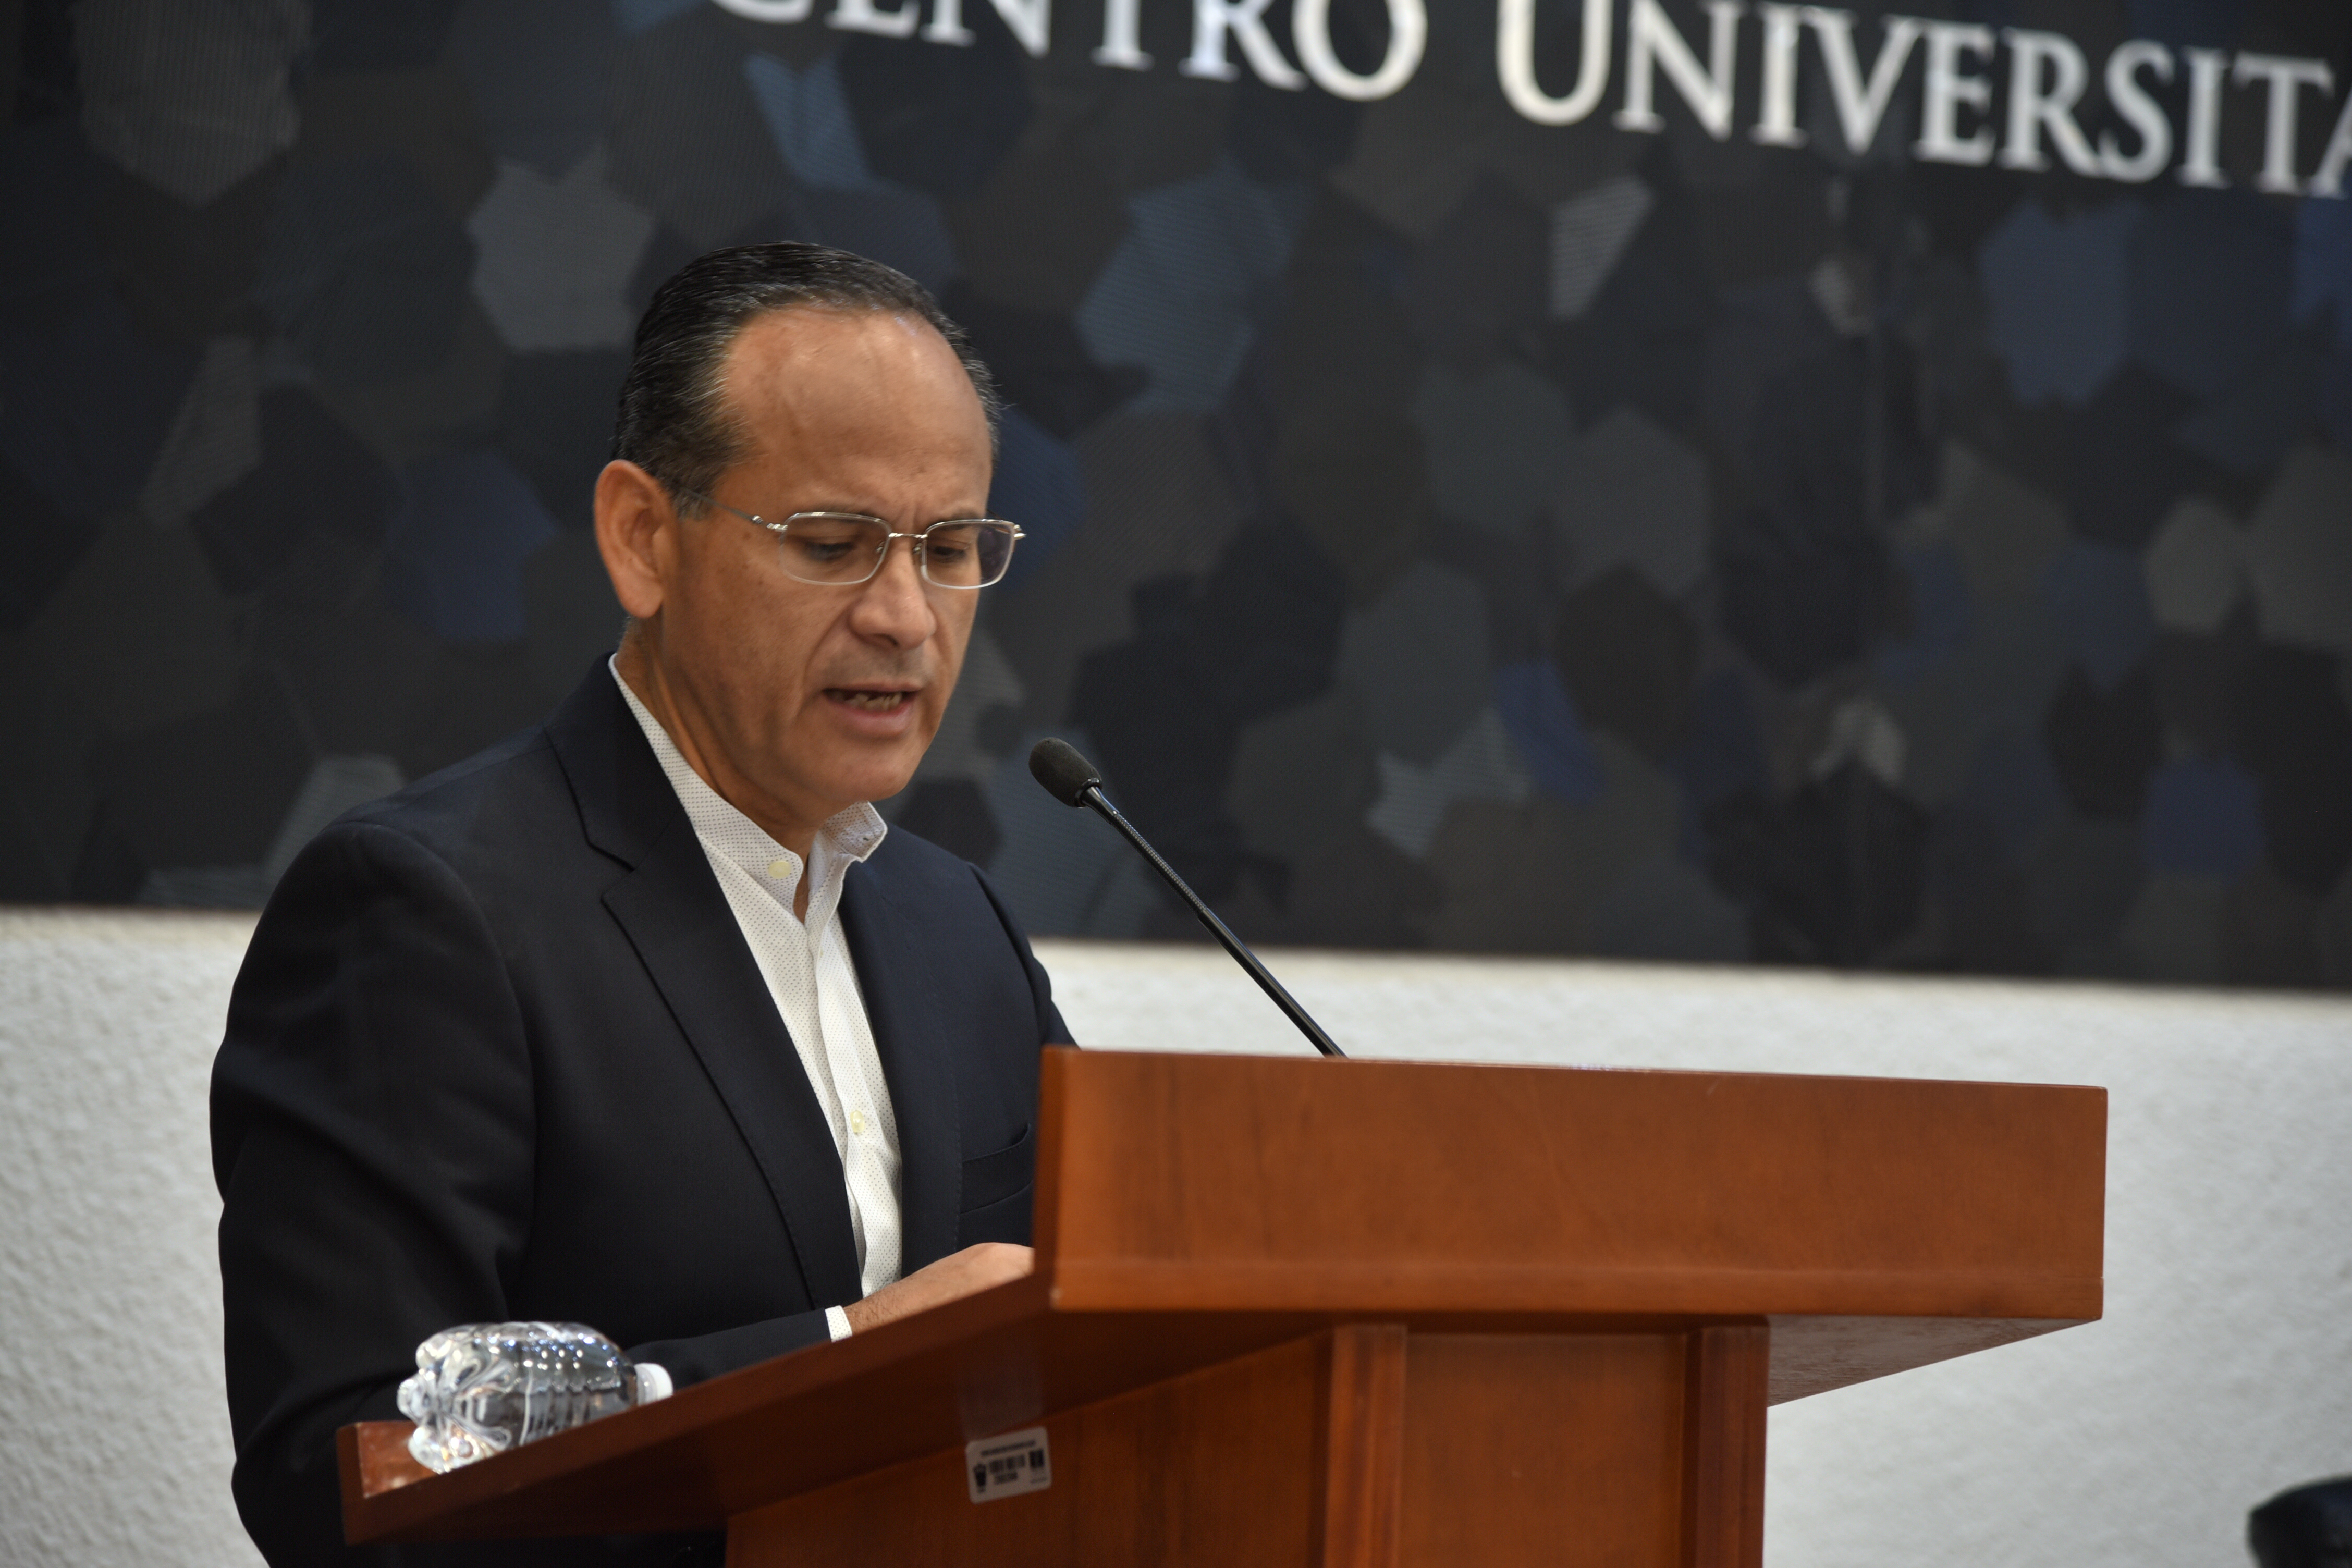 Dr. Héctor Raúl Pérez Gómez al micrófono